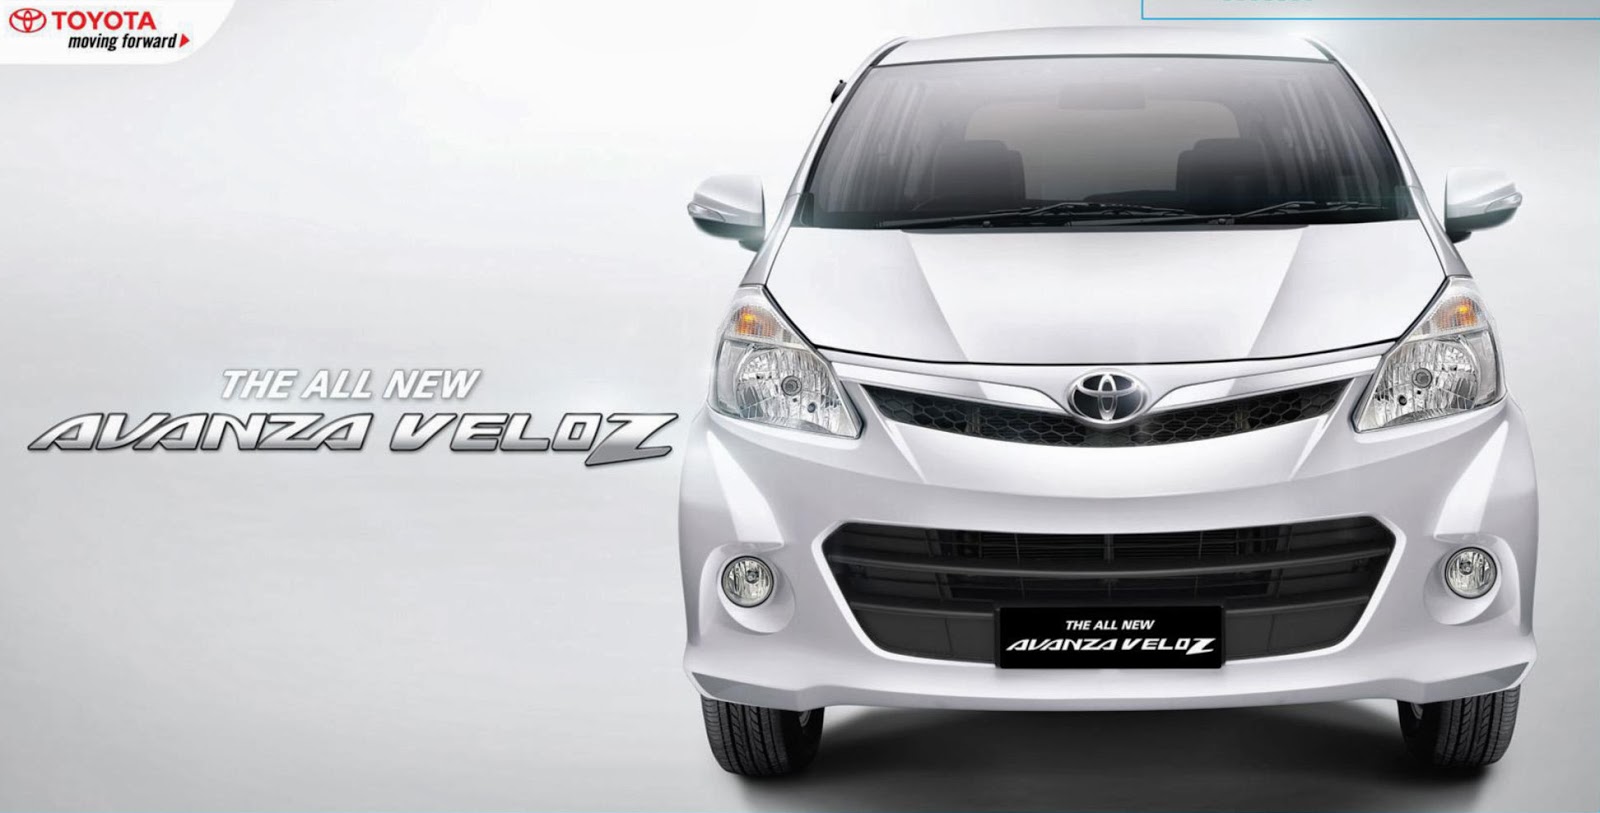 Spesifikasi dan Harga Mobil Toyota Avanza Veloz